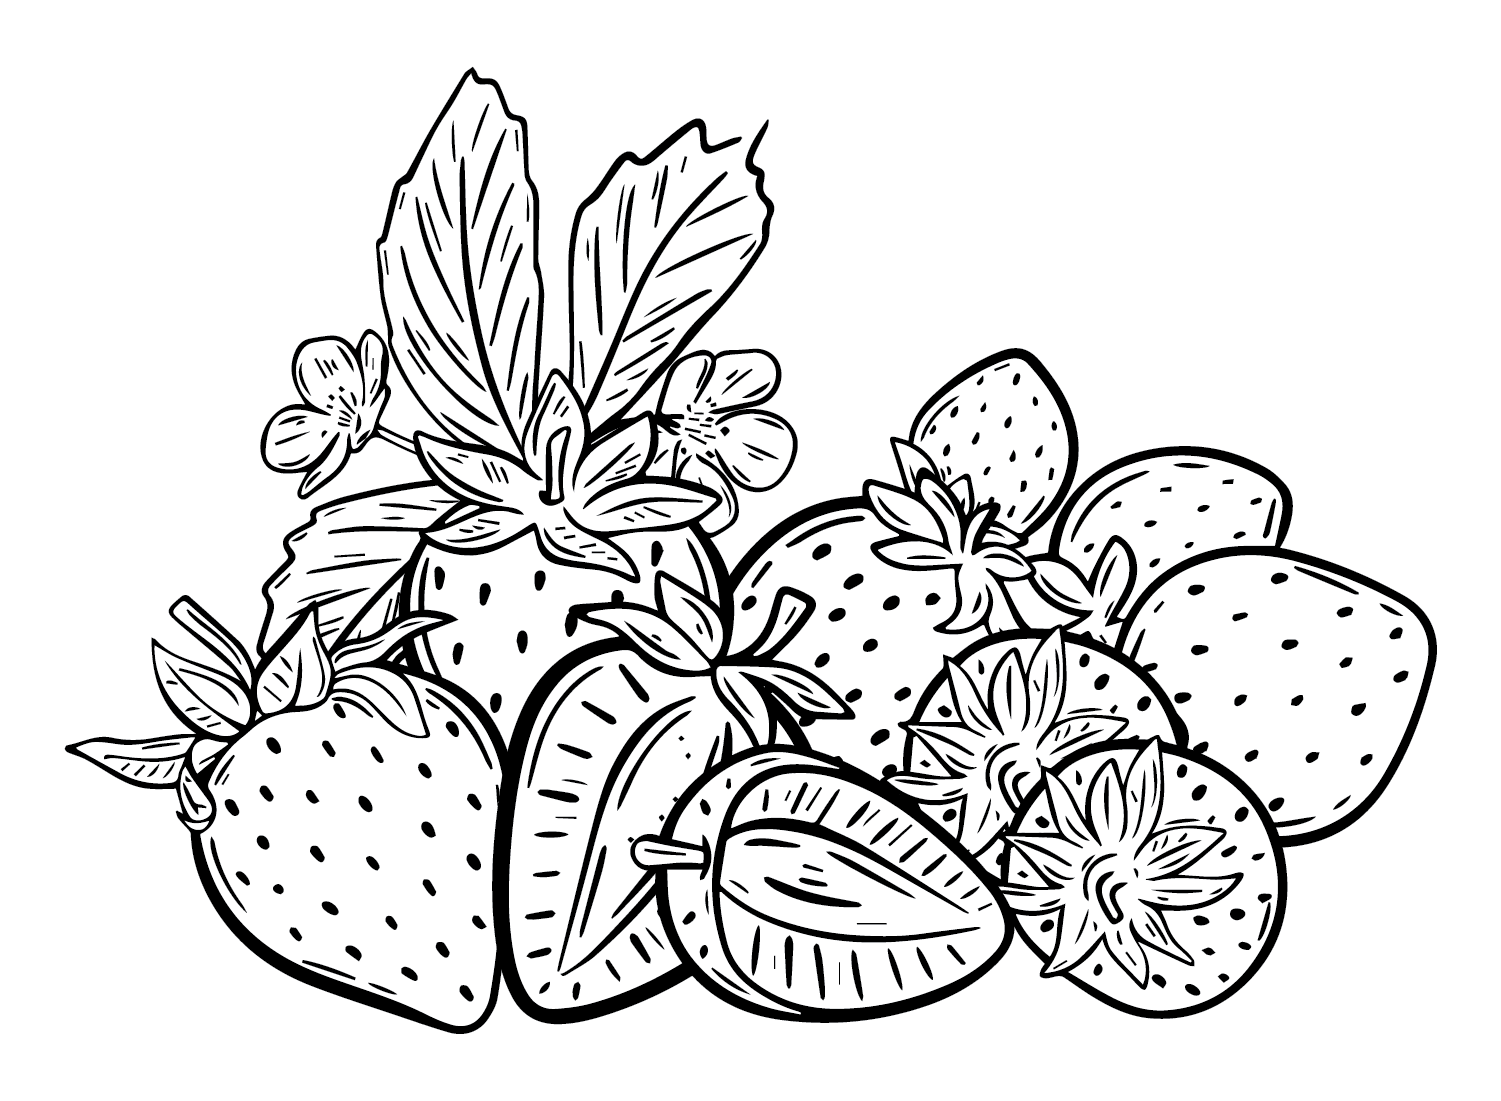 Erdbeerbilder von Strawberry